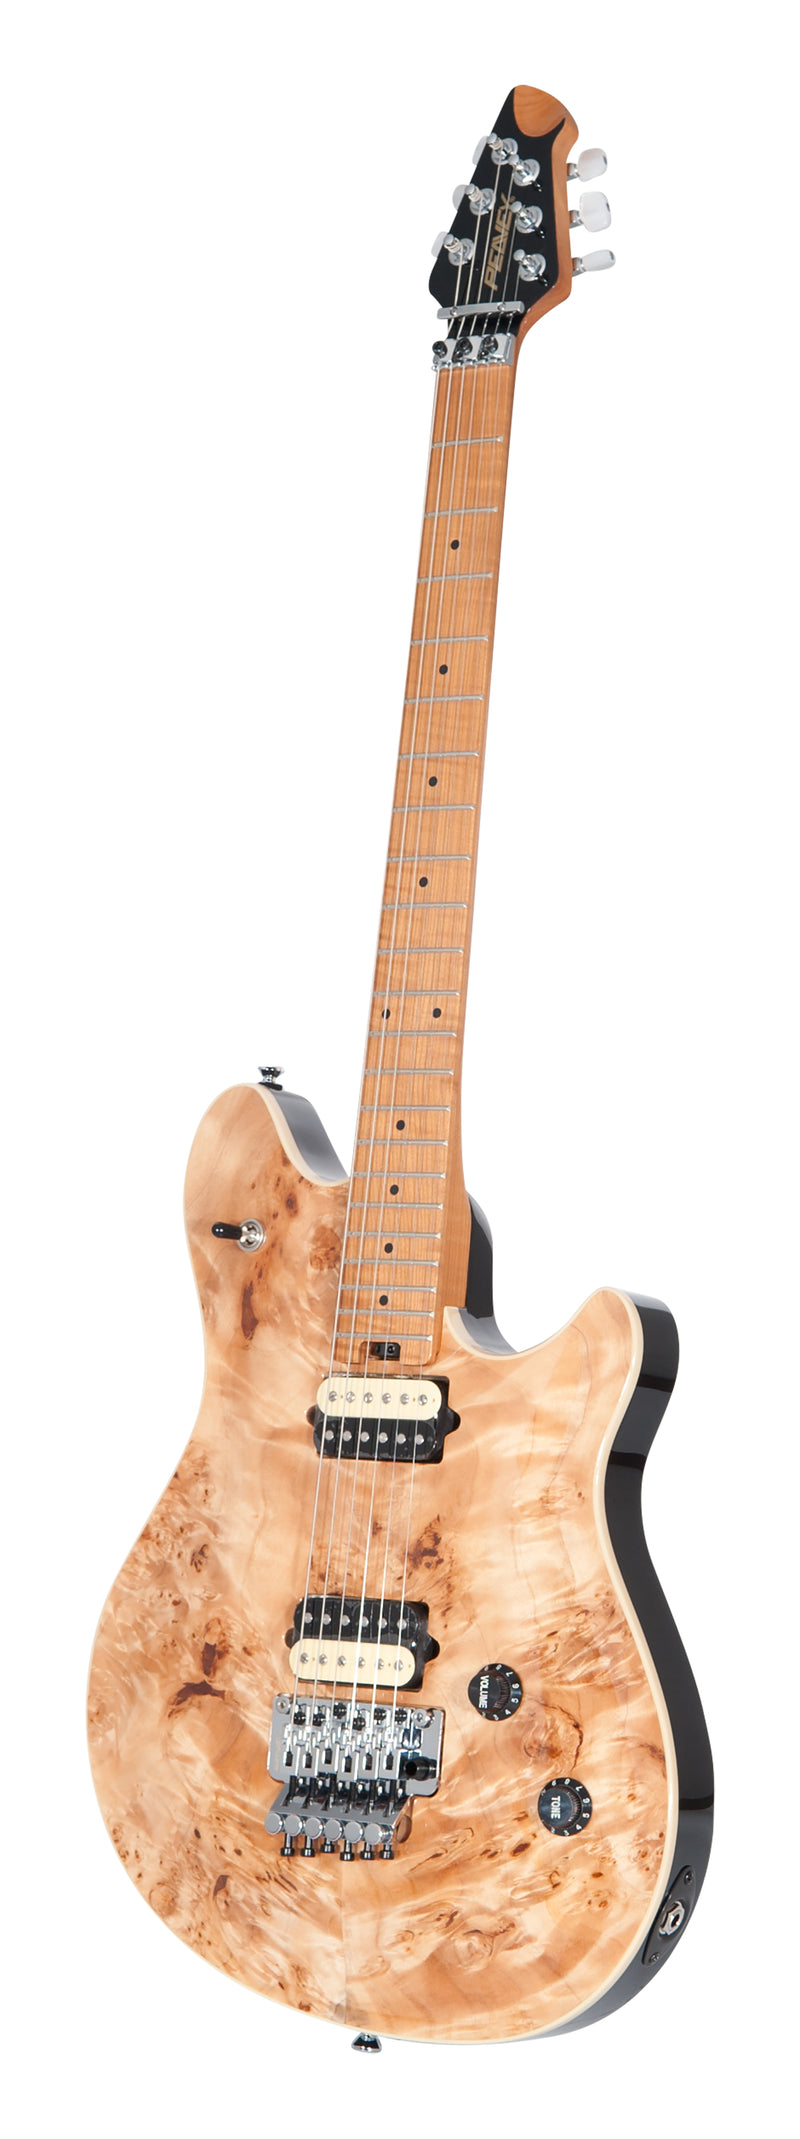 Peavey HP-2 Electric Guitar (Natural)